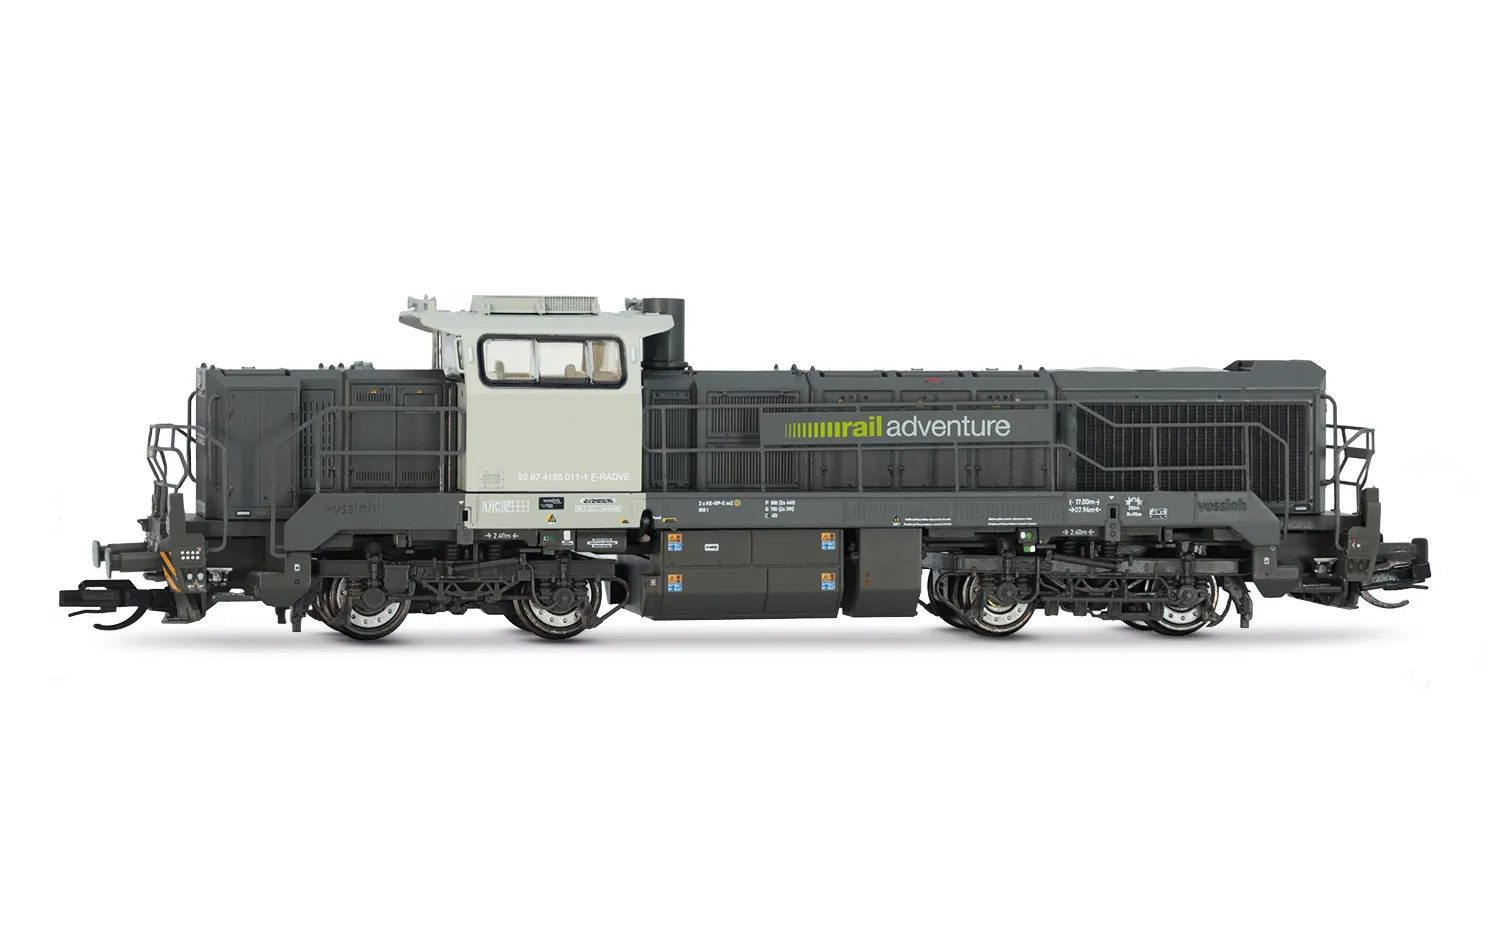 RailAdventure, locomotiva diesel Vossloh DE 18, livrea grigia, ep. VI, con DCC Sound decoder